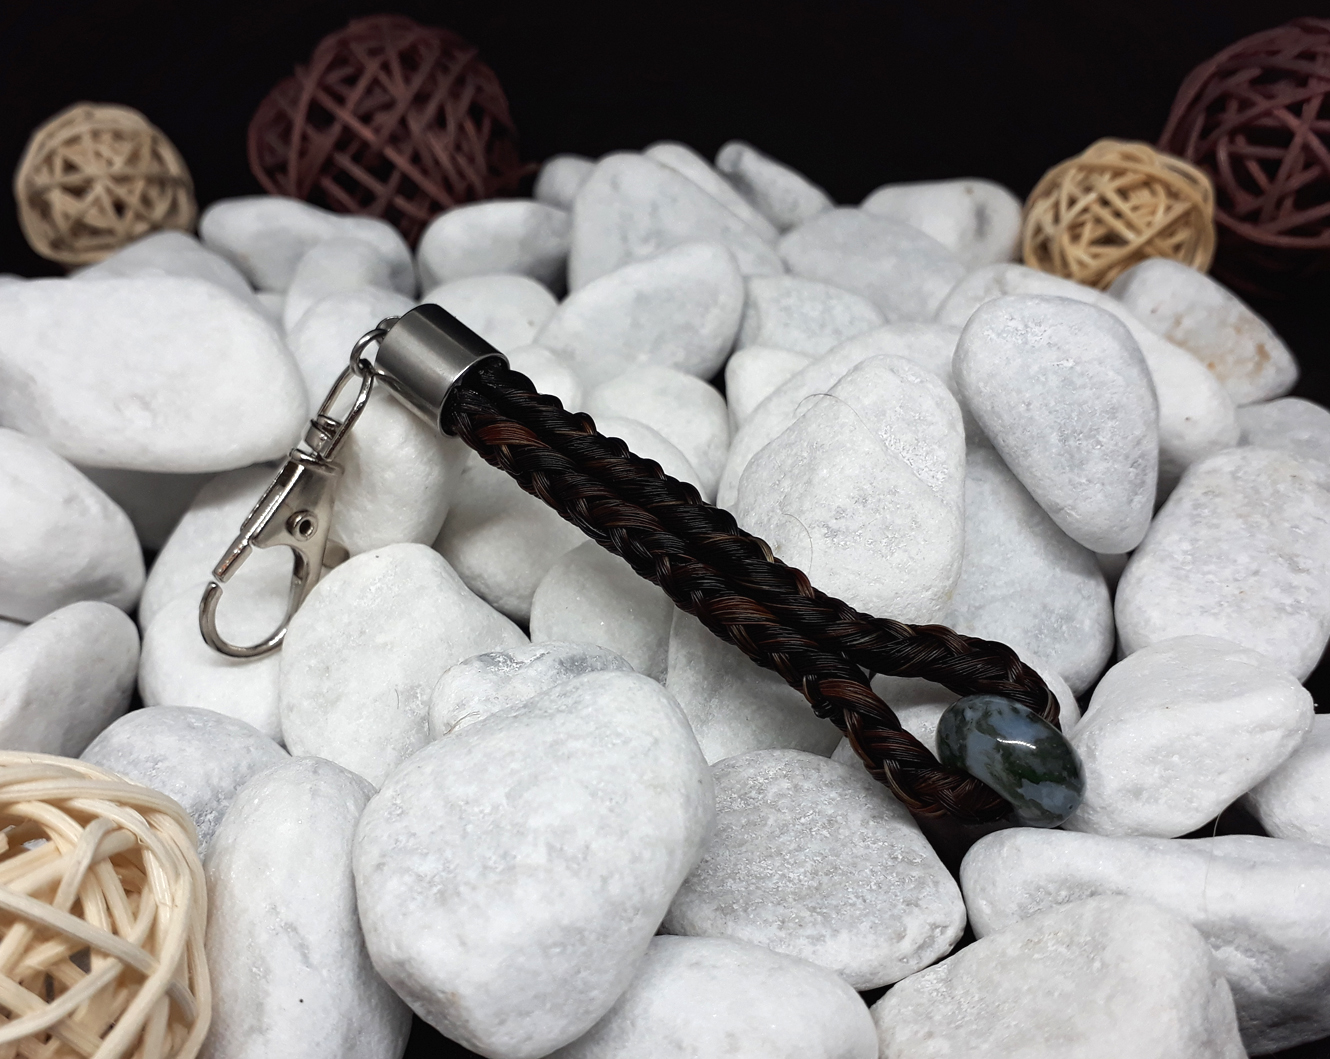 Schlüsselanhänger in Stabform, viereckig geflochten mit braunem Pferdehaar, mit Edelstein "Moosachat", mit Endkappe aus Edelstahl - Preis: 37 Euro